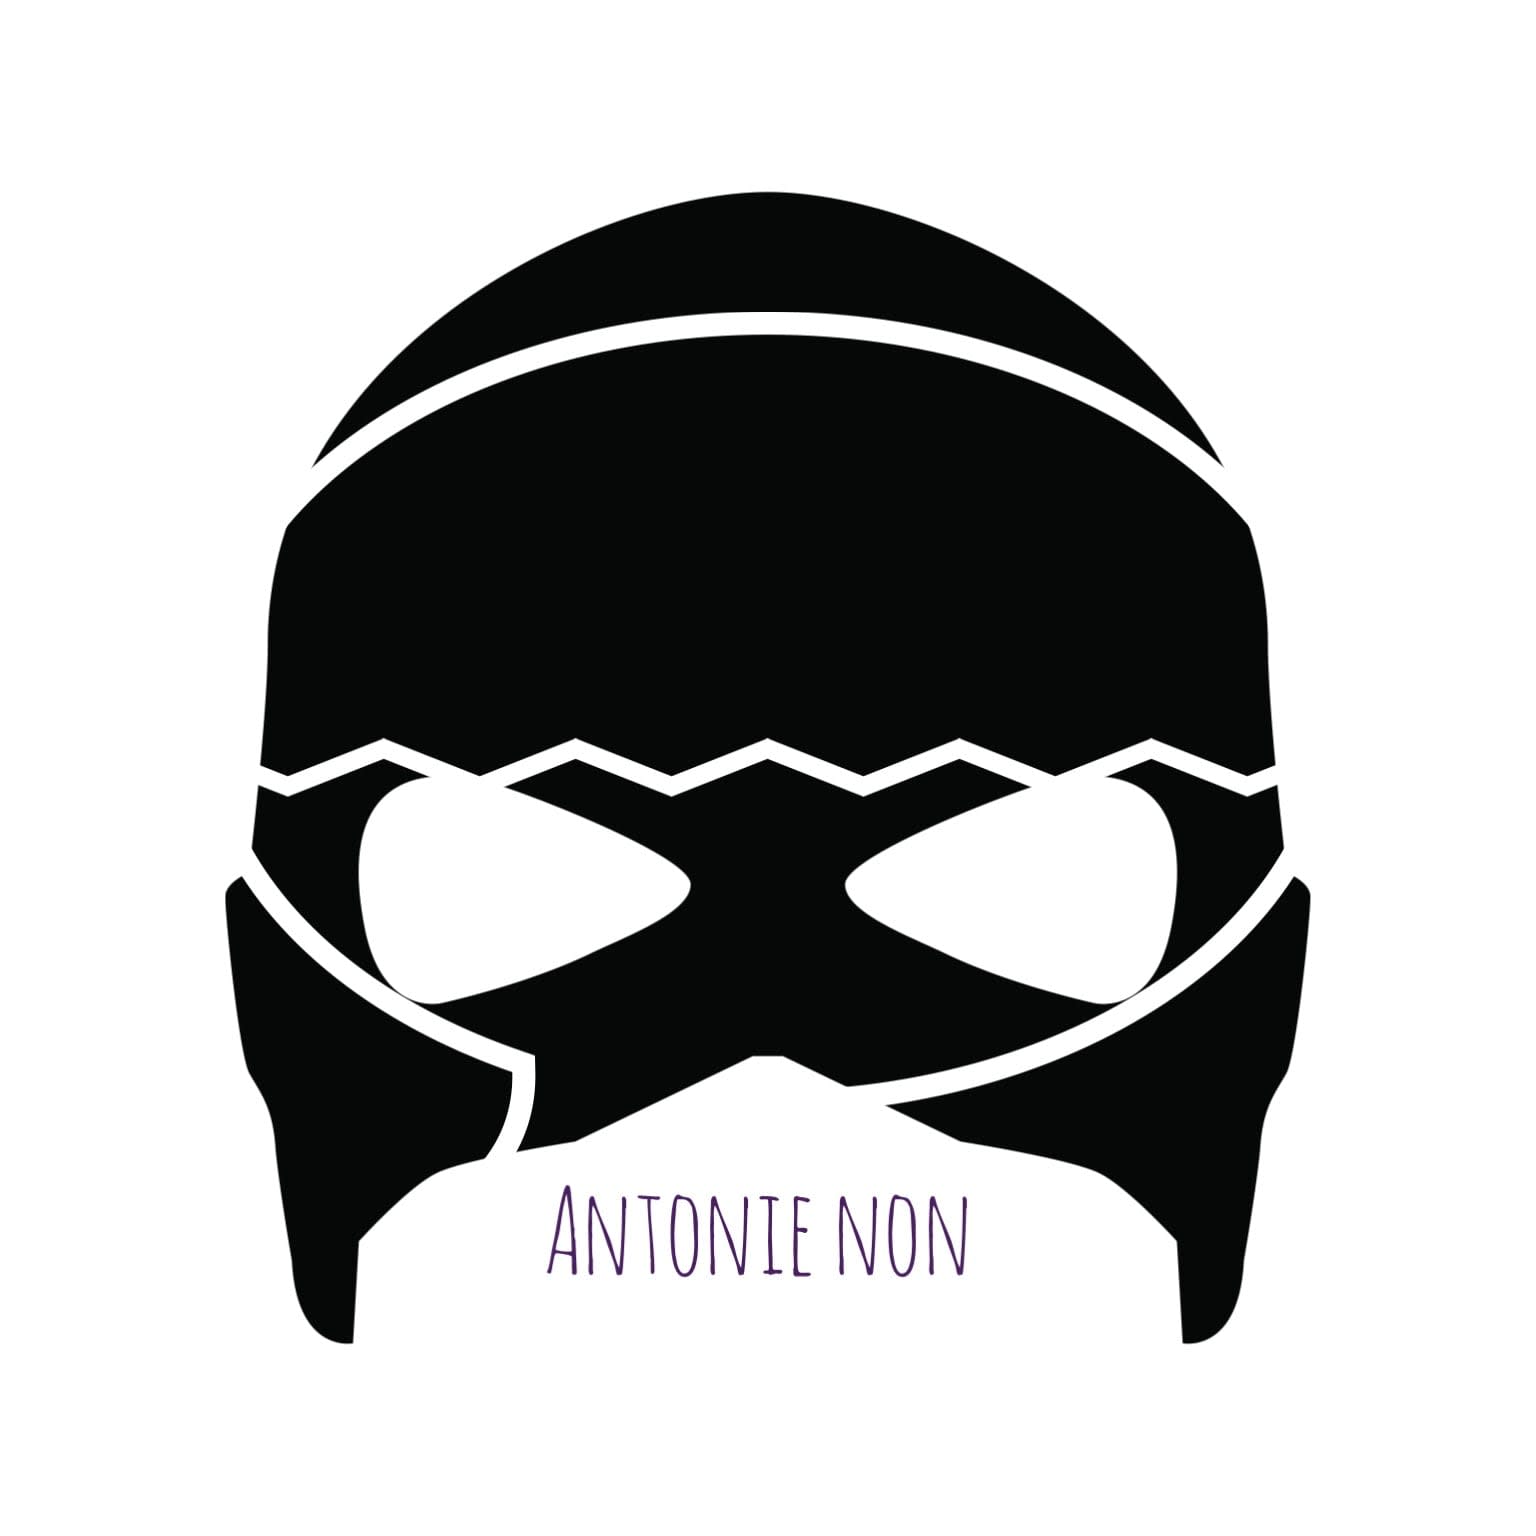 Antonie Non